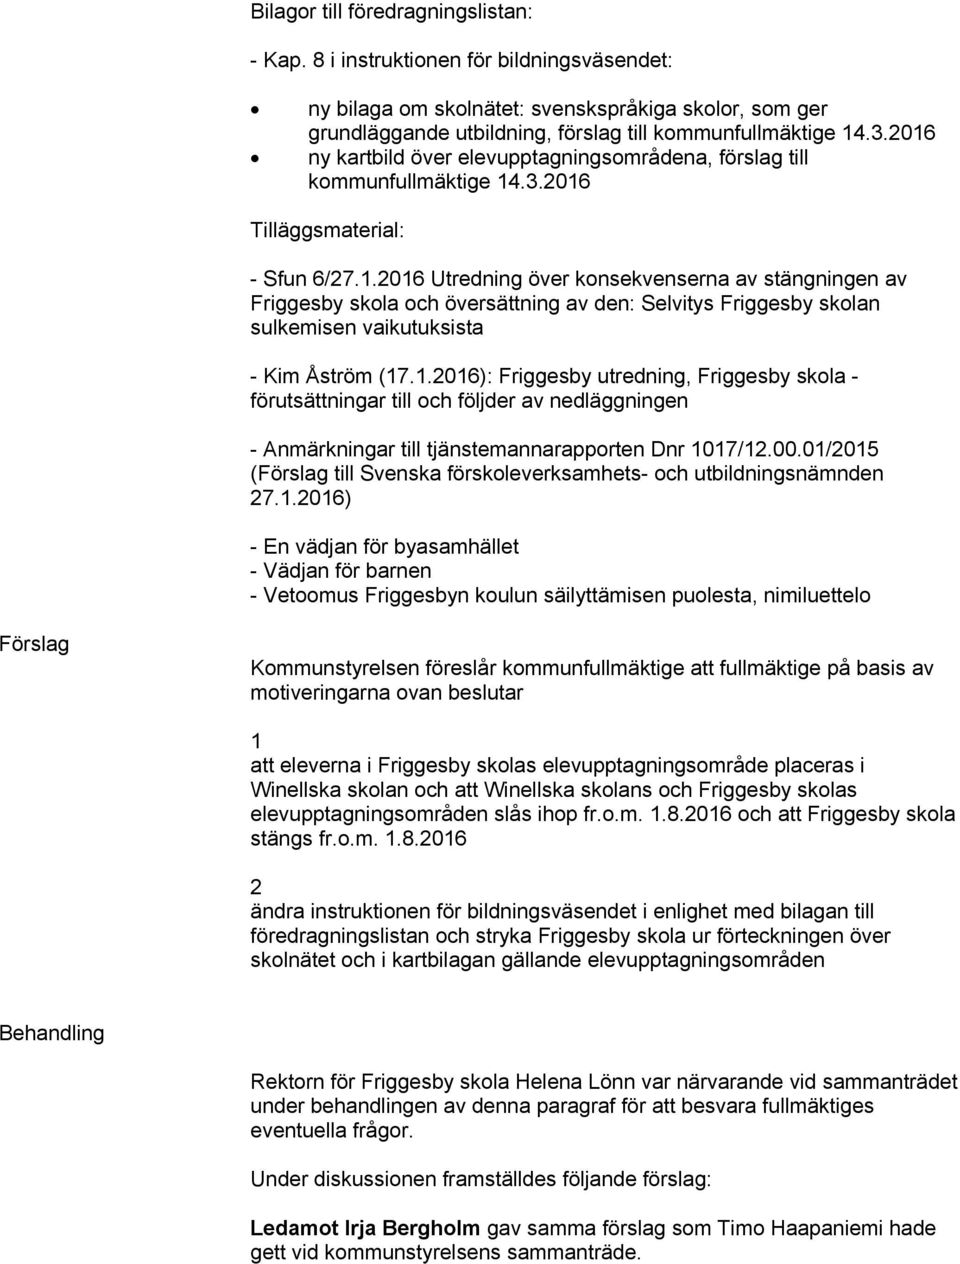 1.2016): Friggesby utredning, Friggesby skola - förutsättningar till och följder av nedläggningen - Anmärkningar till tjänstemannarapporten Dnr 1017/12.00.